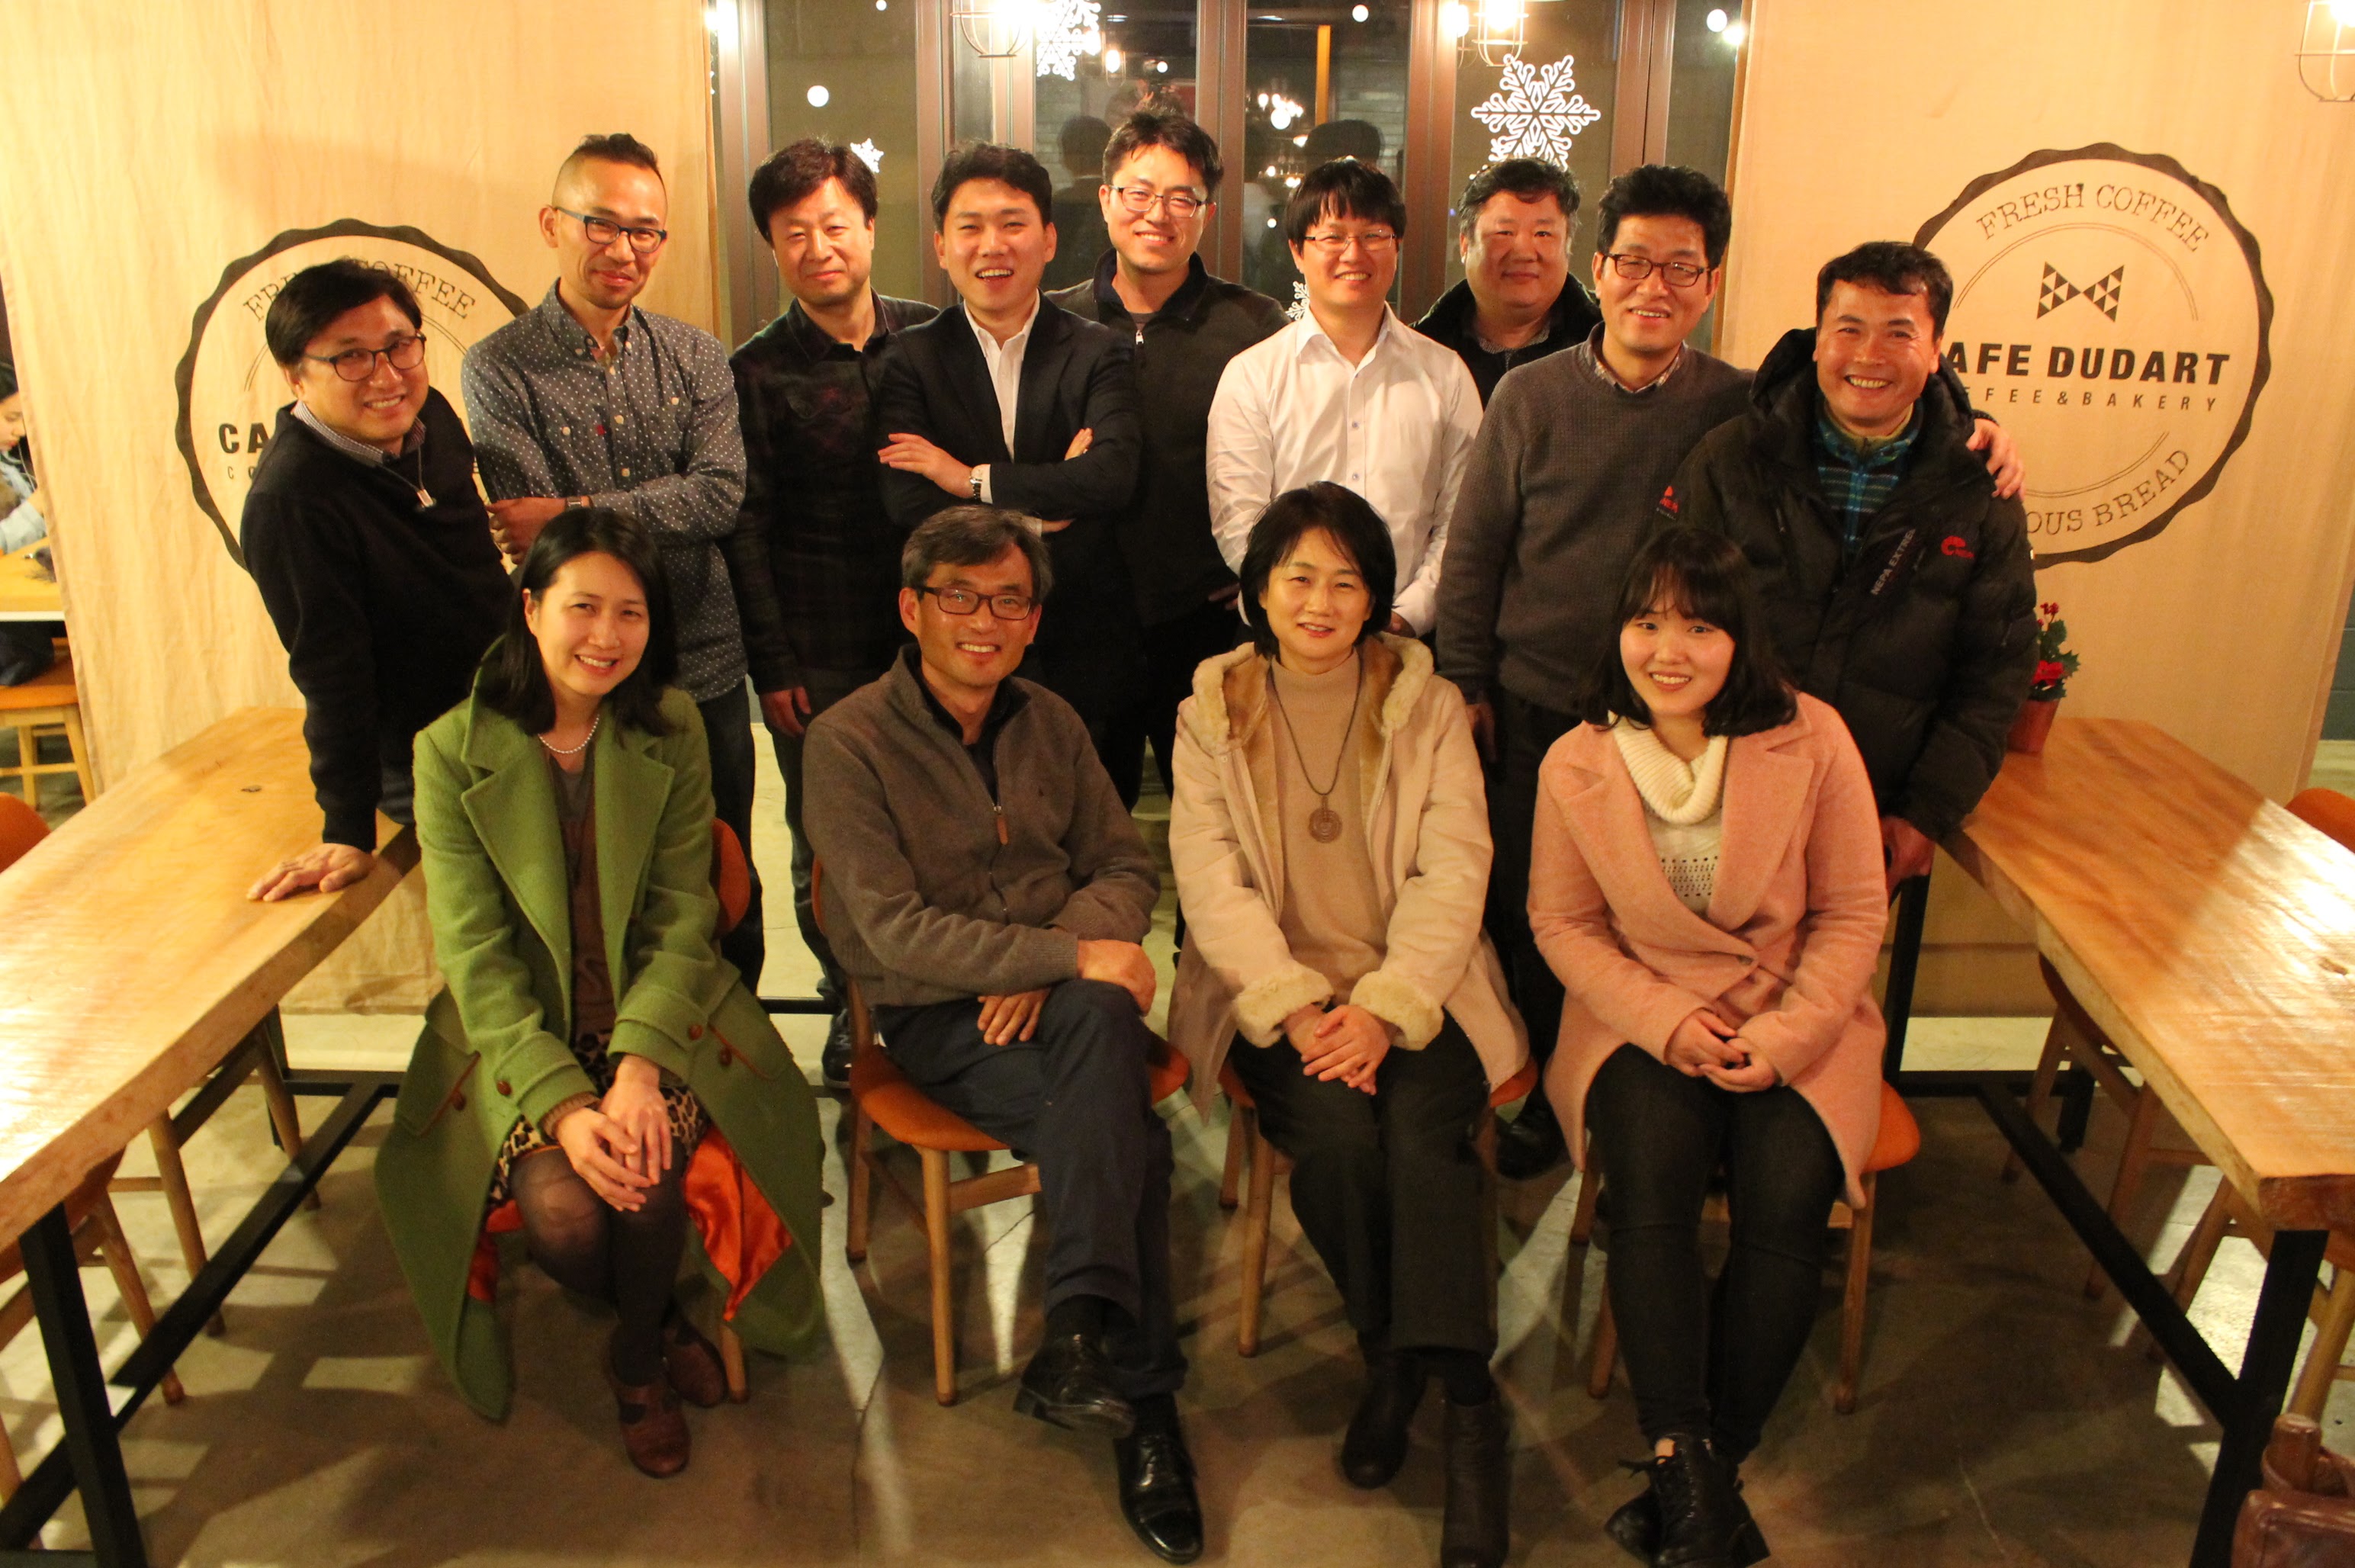 세밑 오마이뉴스 10만인클럽 회원 14명이 한 자리에 모였습니다. 오연호 대표기자의 약속 '1만번째 회원과 저녁식사' 때문입니다. 사진은 지난해 12월 30일 서울시 마포구 홍대 인근의 한 카페에서 기념촬영한 모습입니다.